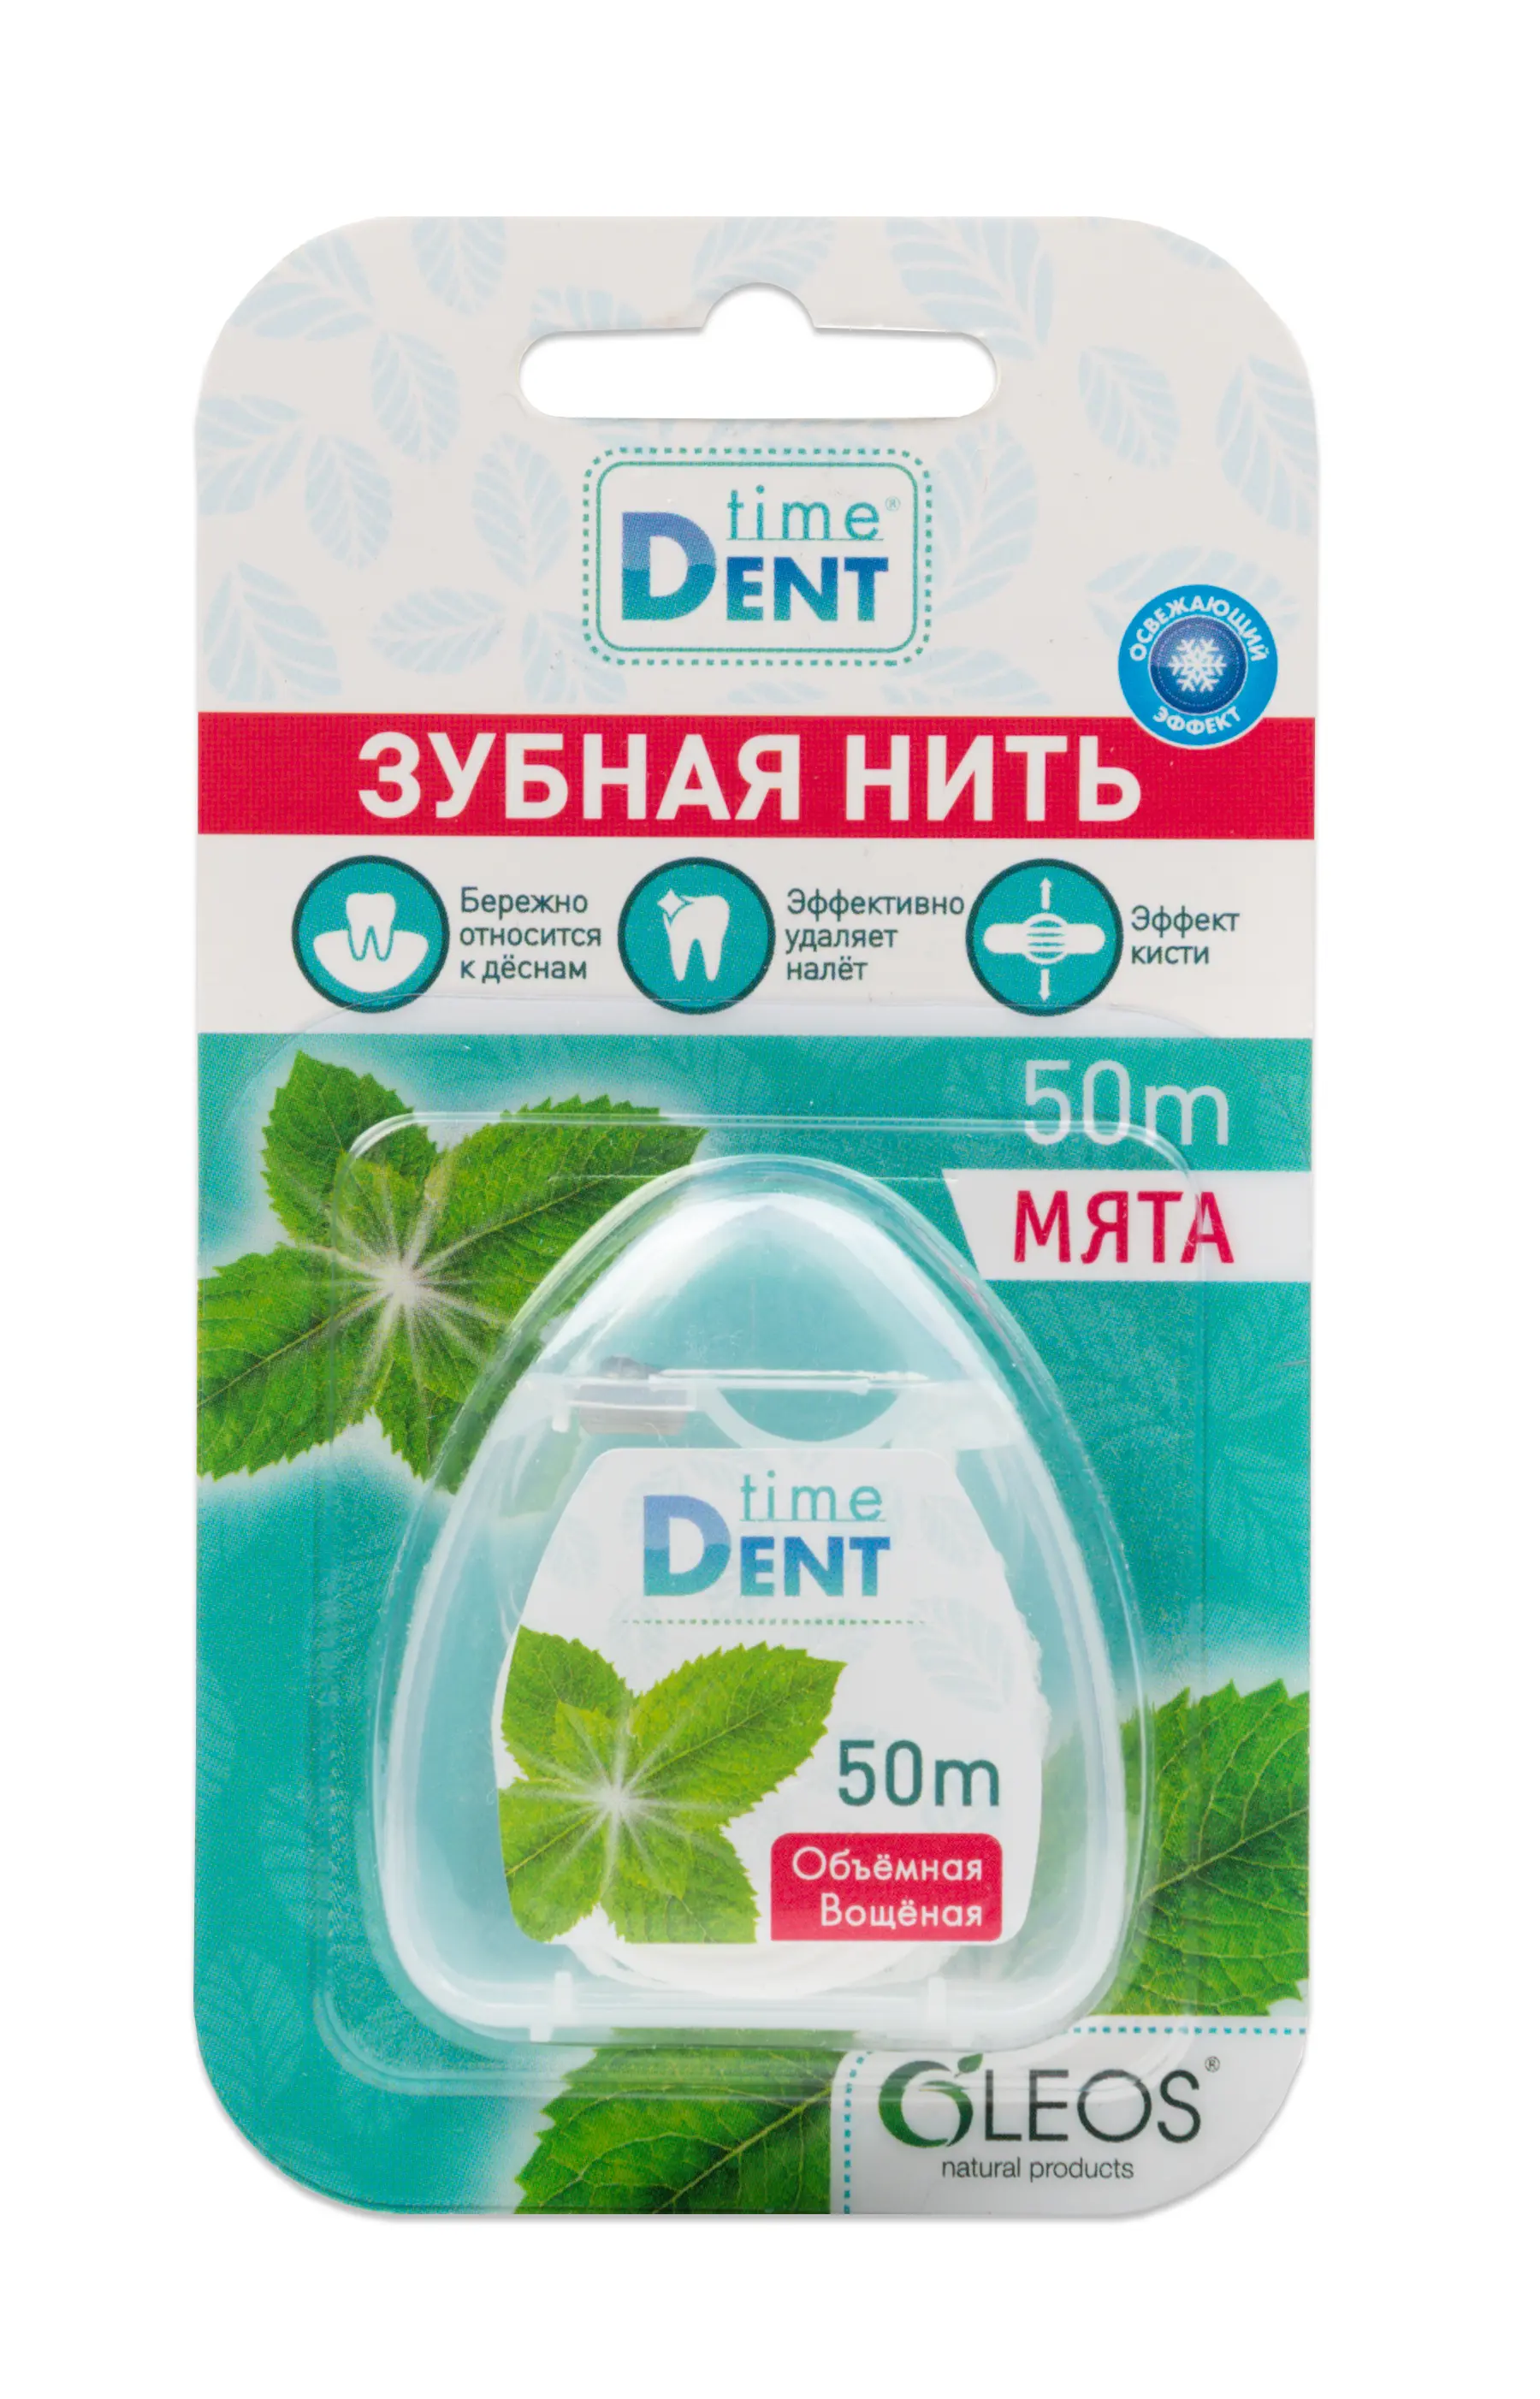 ТАЙМ ДЕНТ зубная нить объемная вощеная 50м Мята (Олеос, РФ)